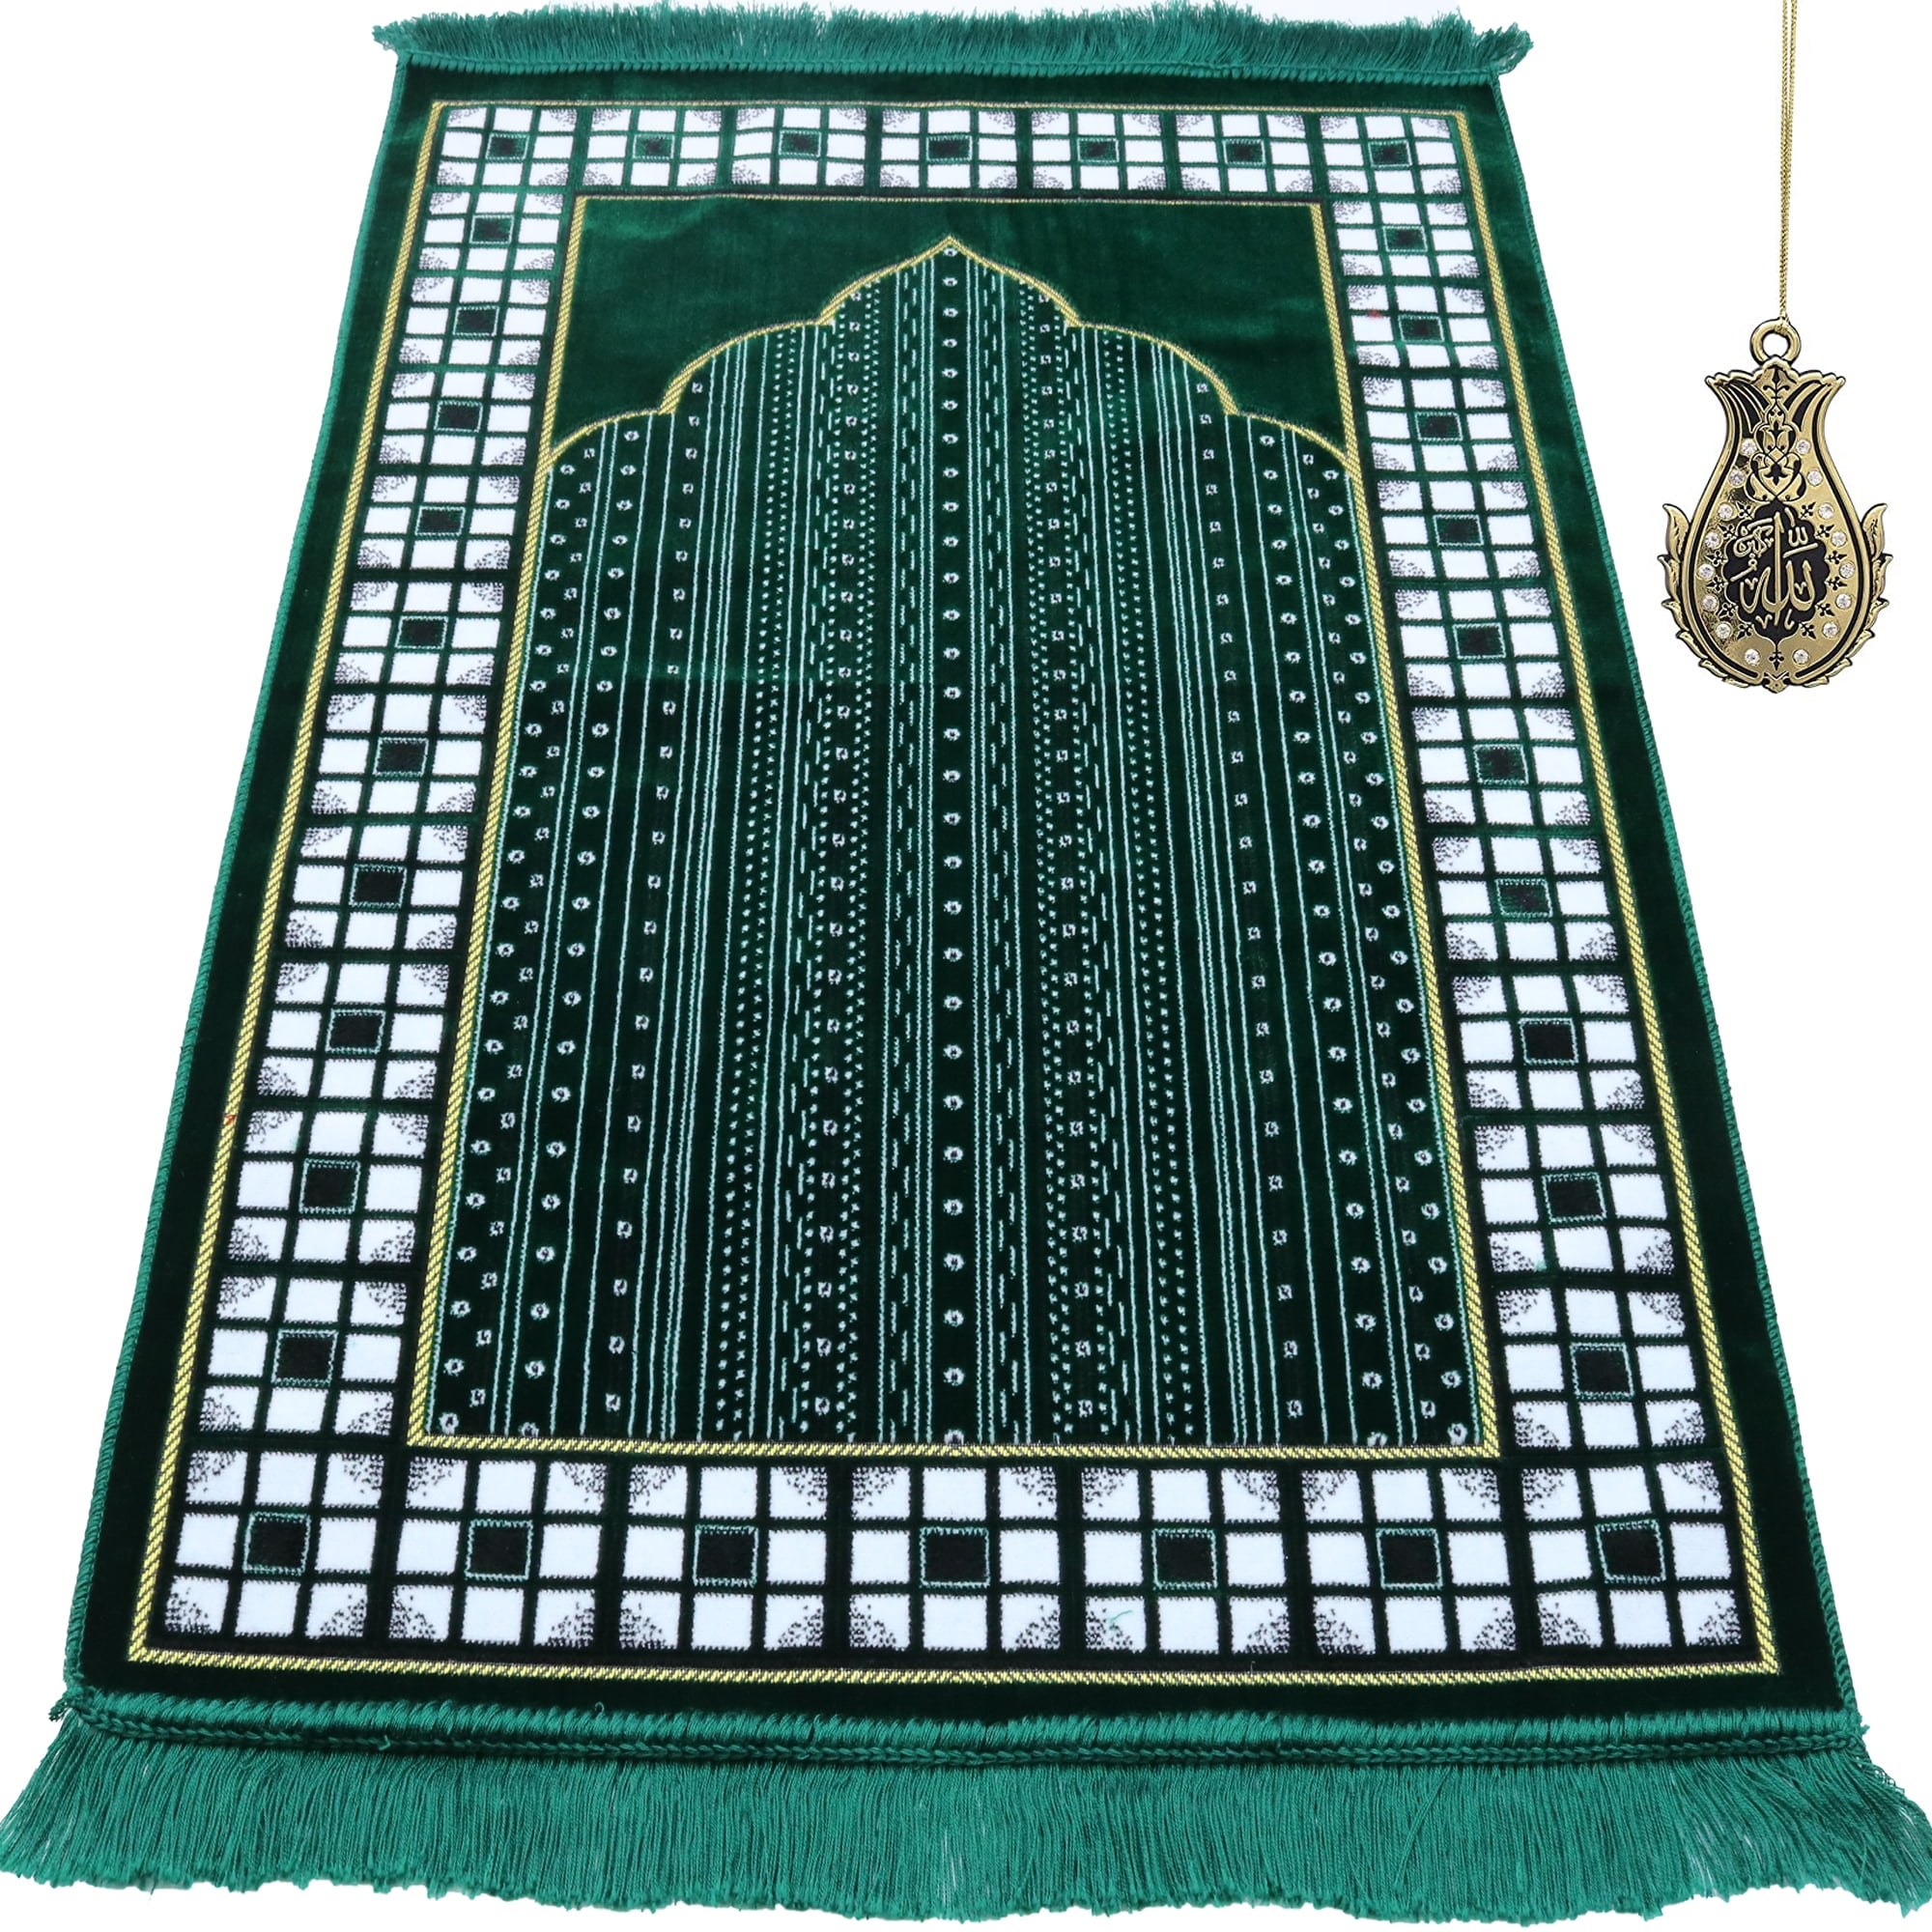 DIY Sewing Kit 2 PRAYING MUSLIM GIRLS Prayer Rugs Kit Girl Eid Gift Girls 35 pcs